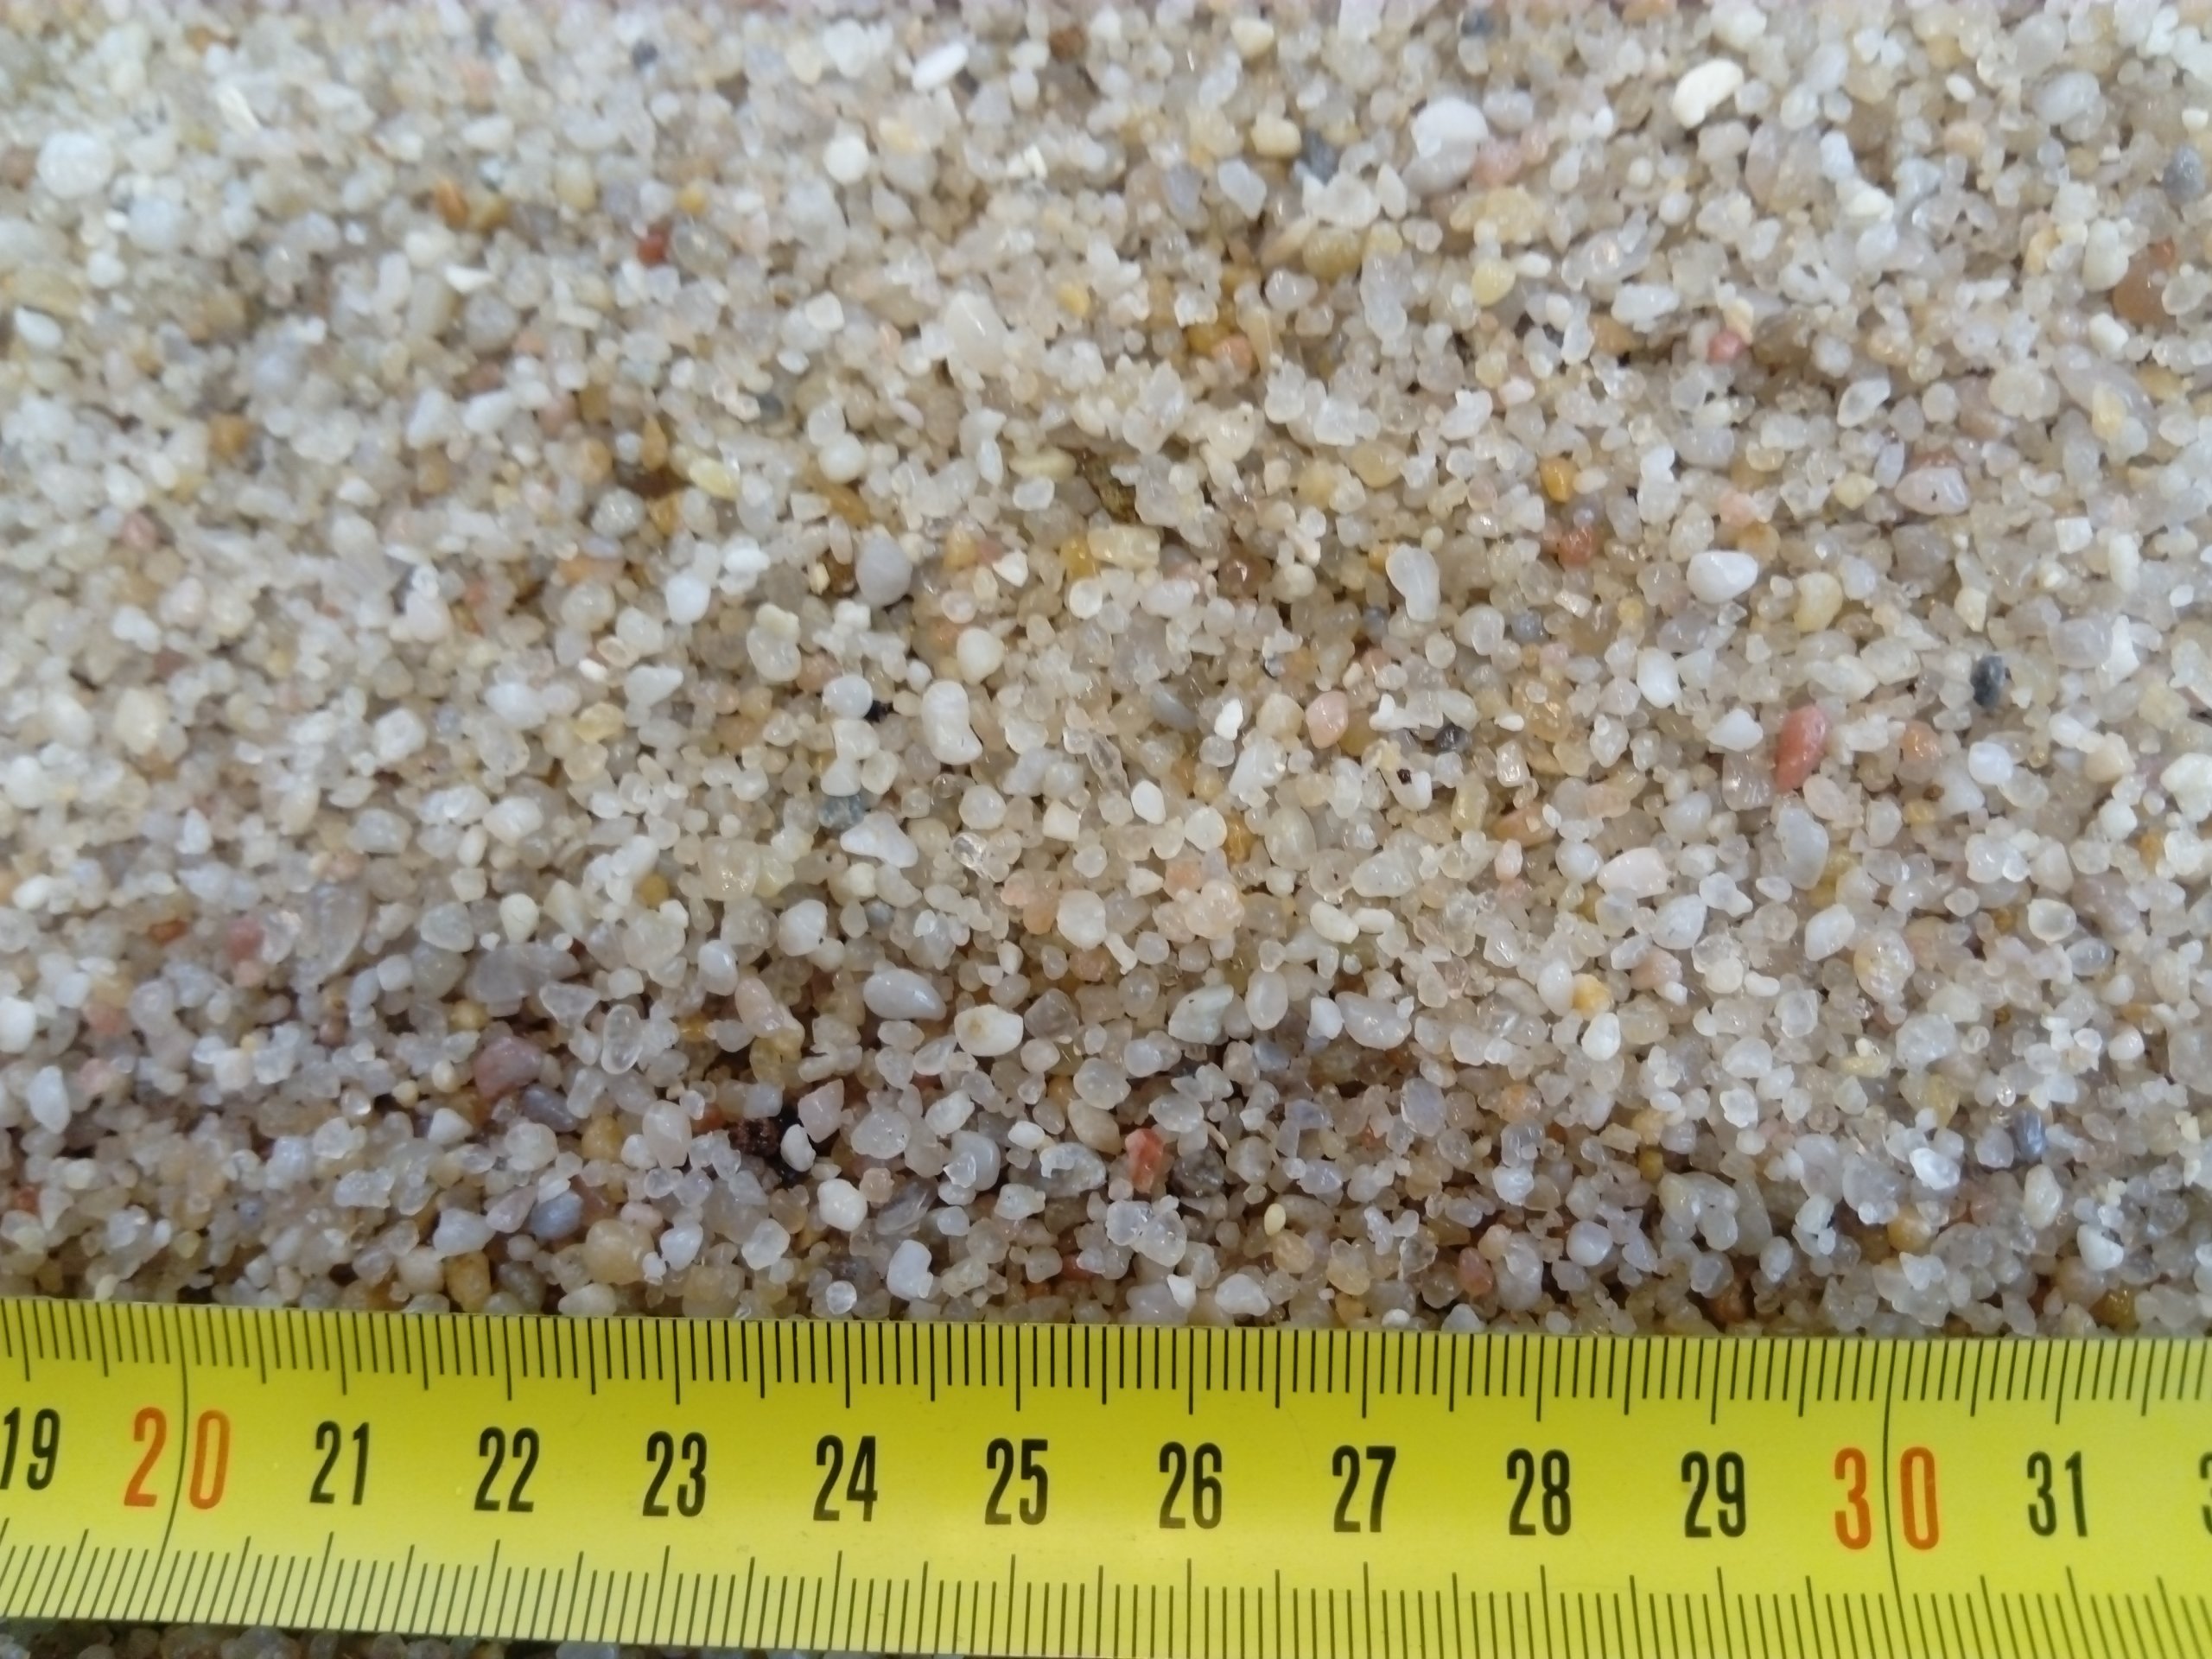 Кварцевый песок для аквариума: плюсы и минусы такого грунта, бывает ли медового цвета, можно ли речной субстрат, а также как его положить и как за ним ухаживать?